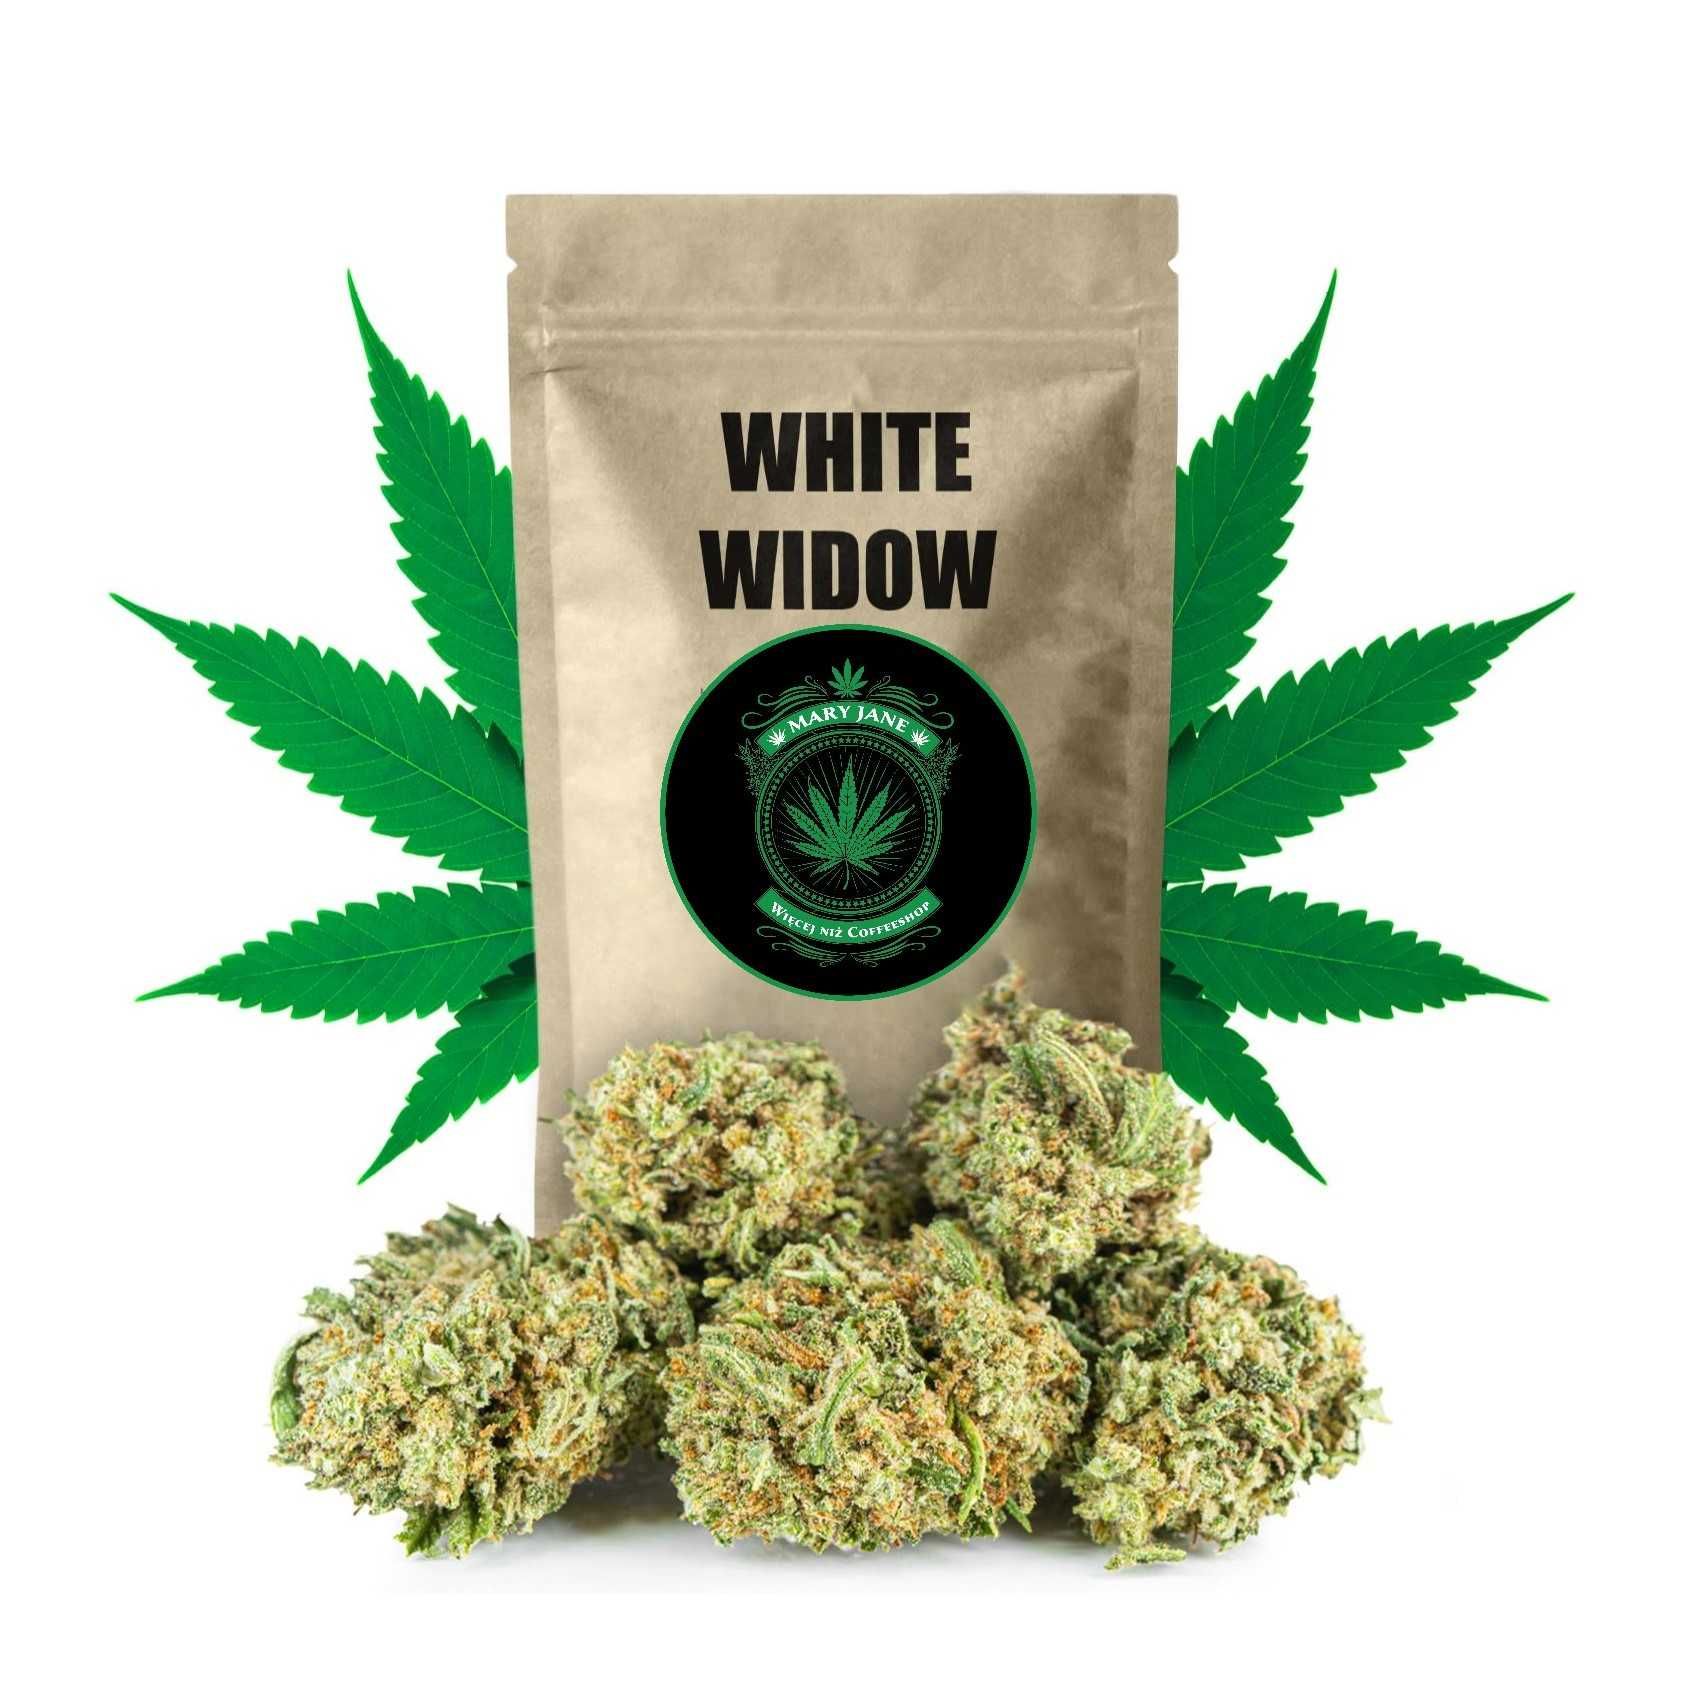 Sklep Mary Jane | White Widow do 39% CBD - Legalny Susz Konopny 1 gram